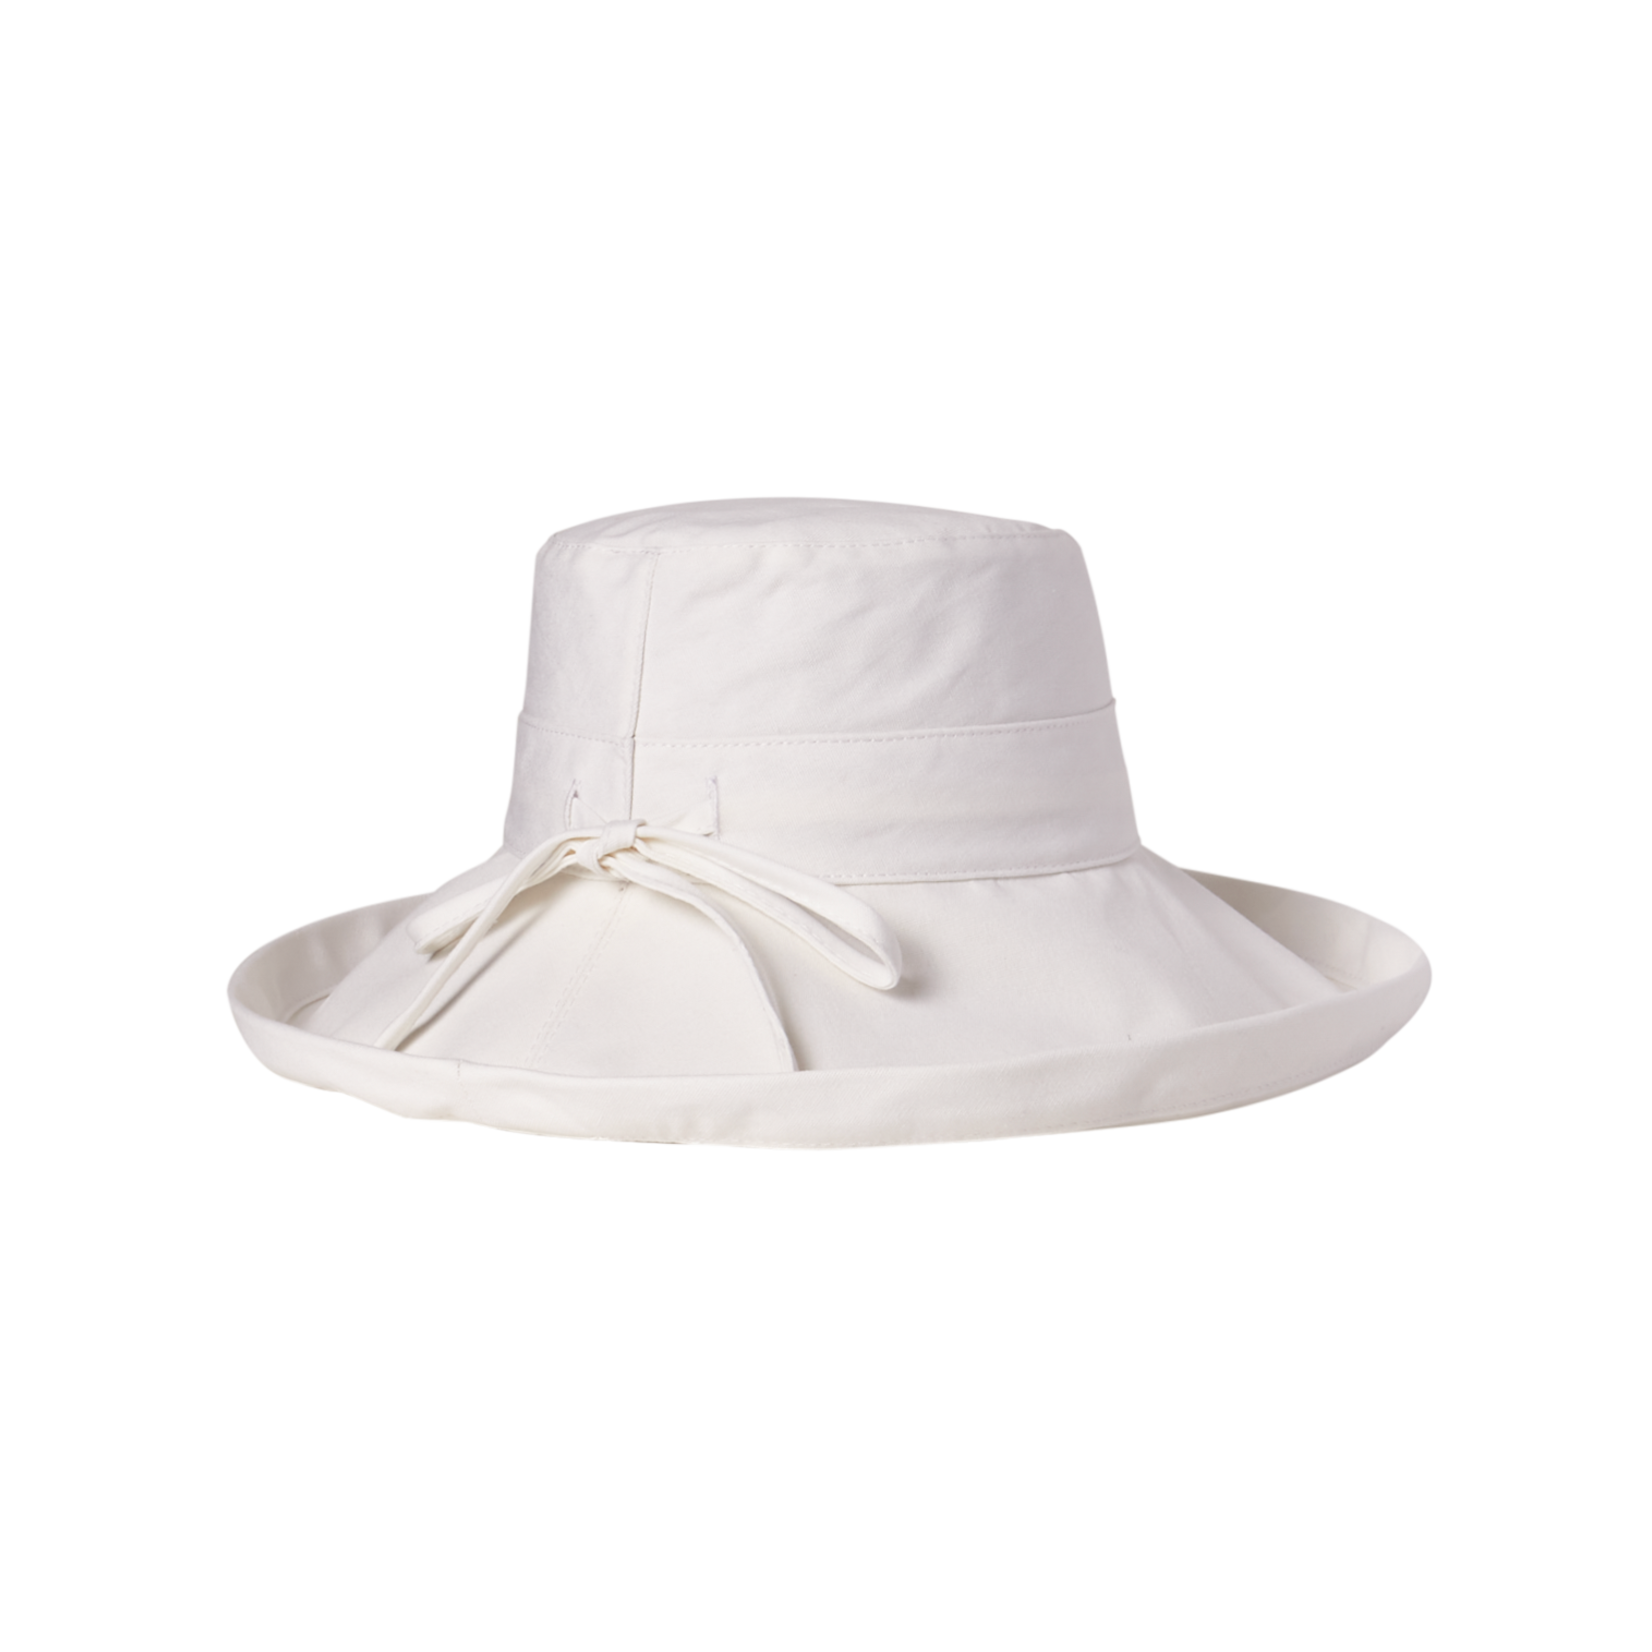 Kooringal Noosa Upturn Hat in White